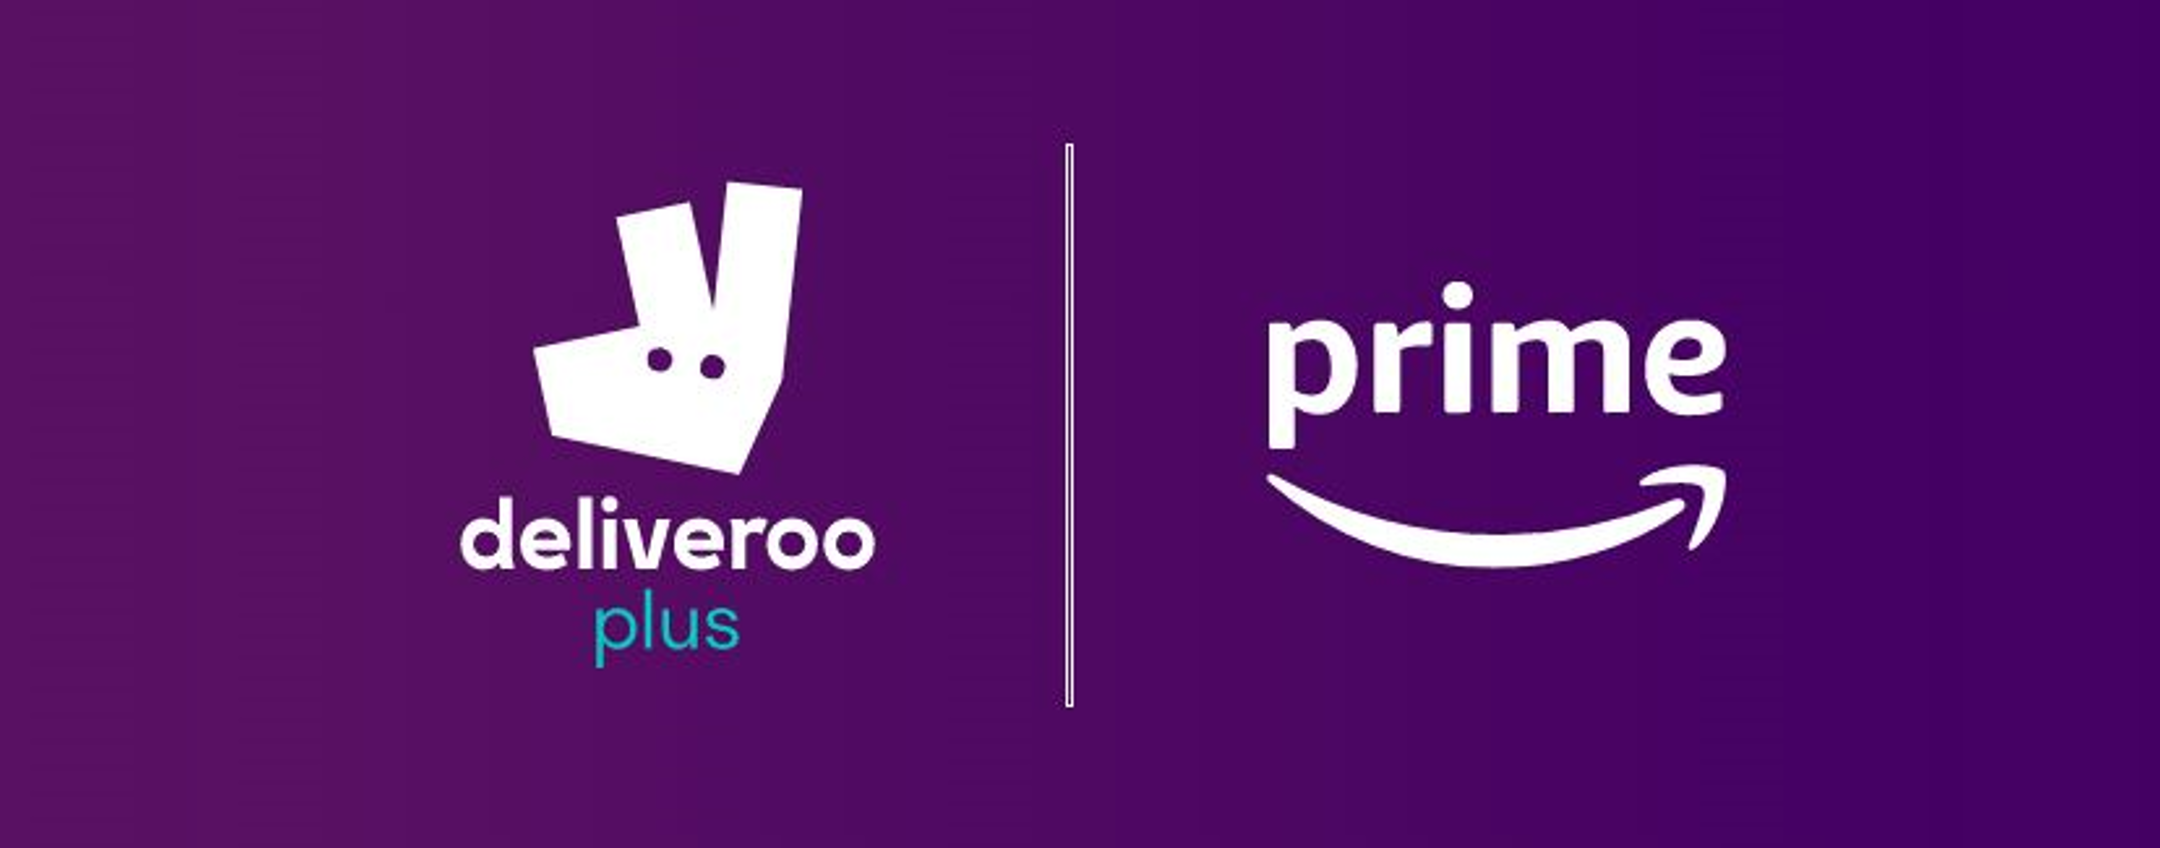 Amazon Prime comprende da oggi l'abbonamento a Deliveroo Plus